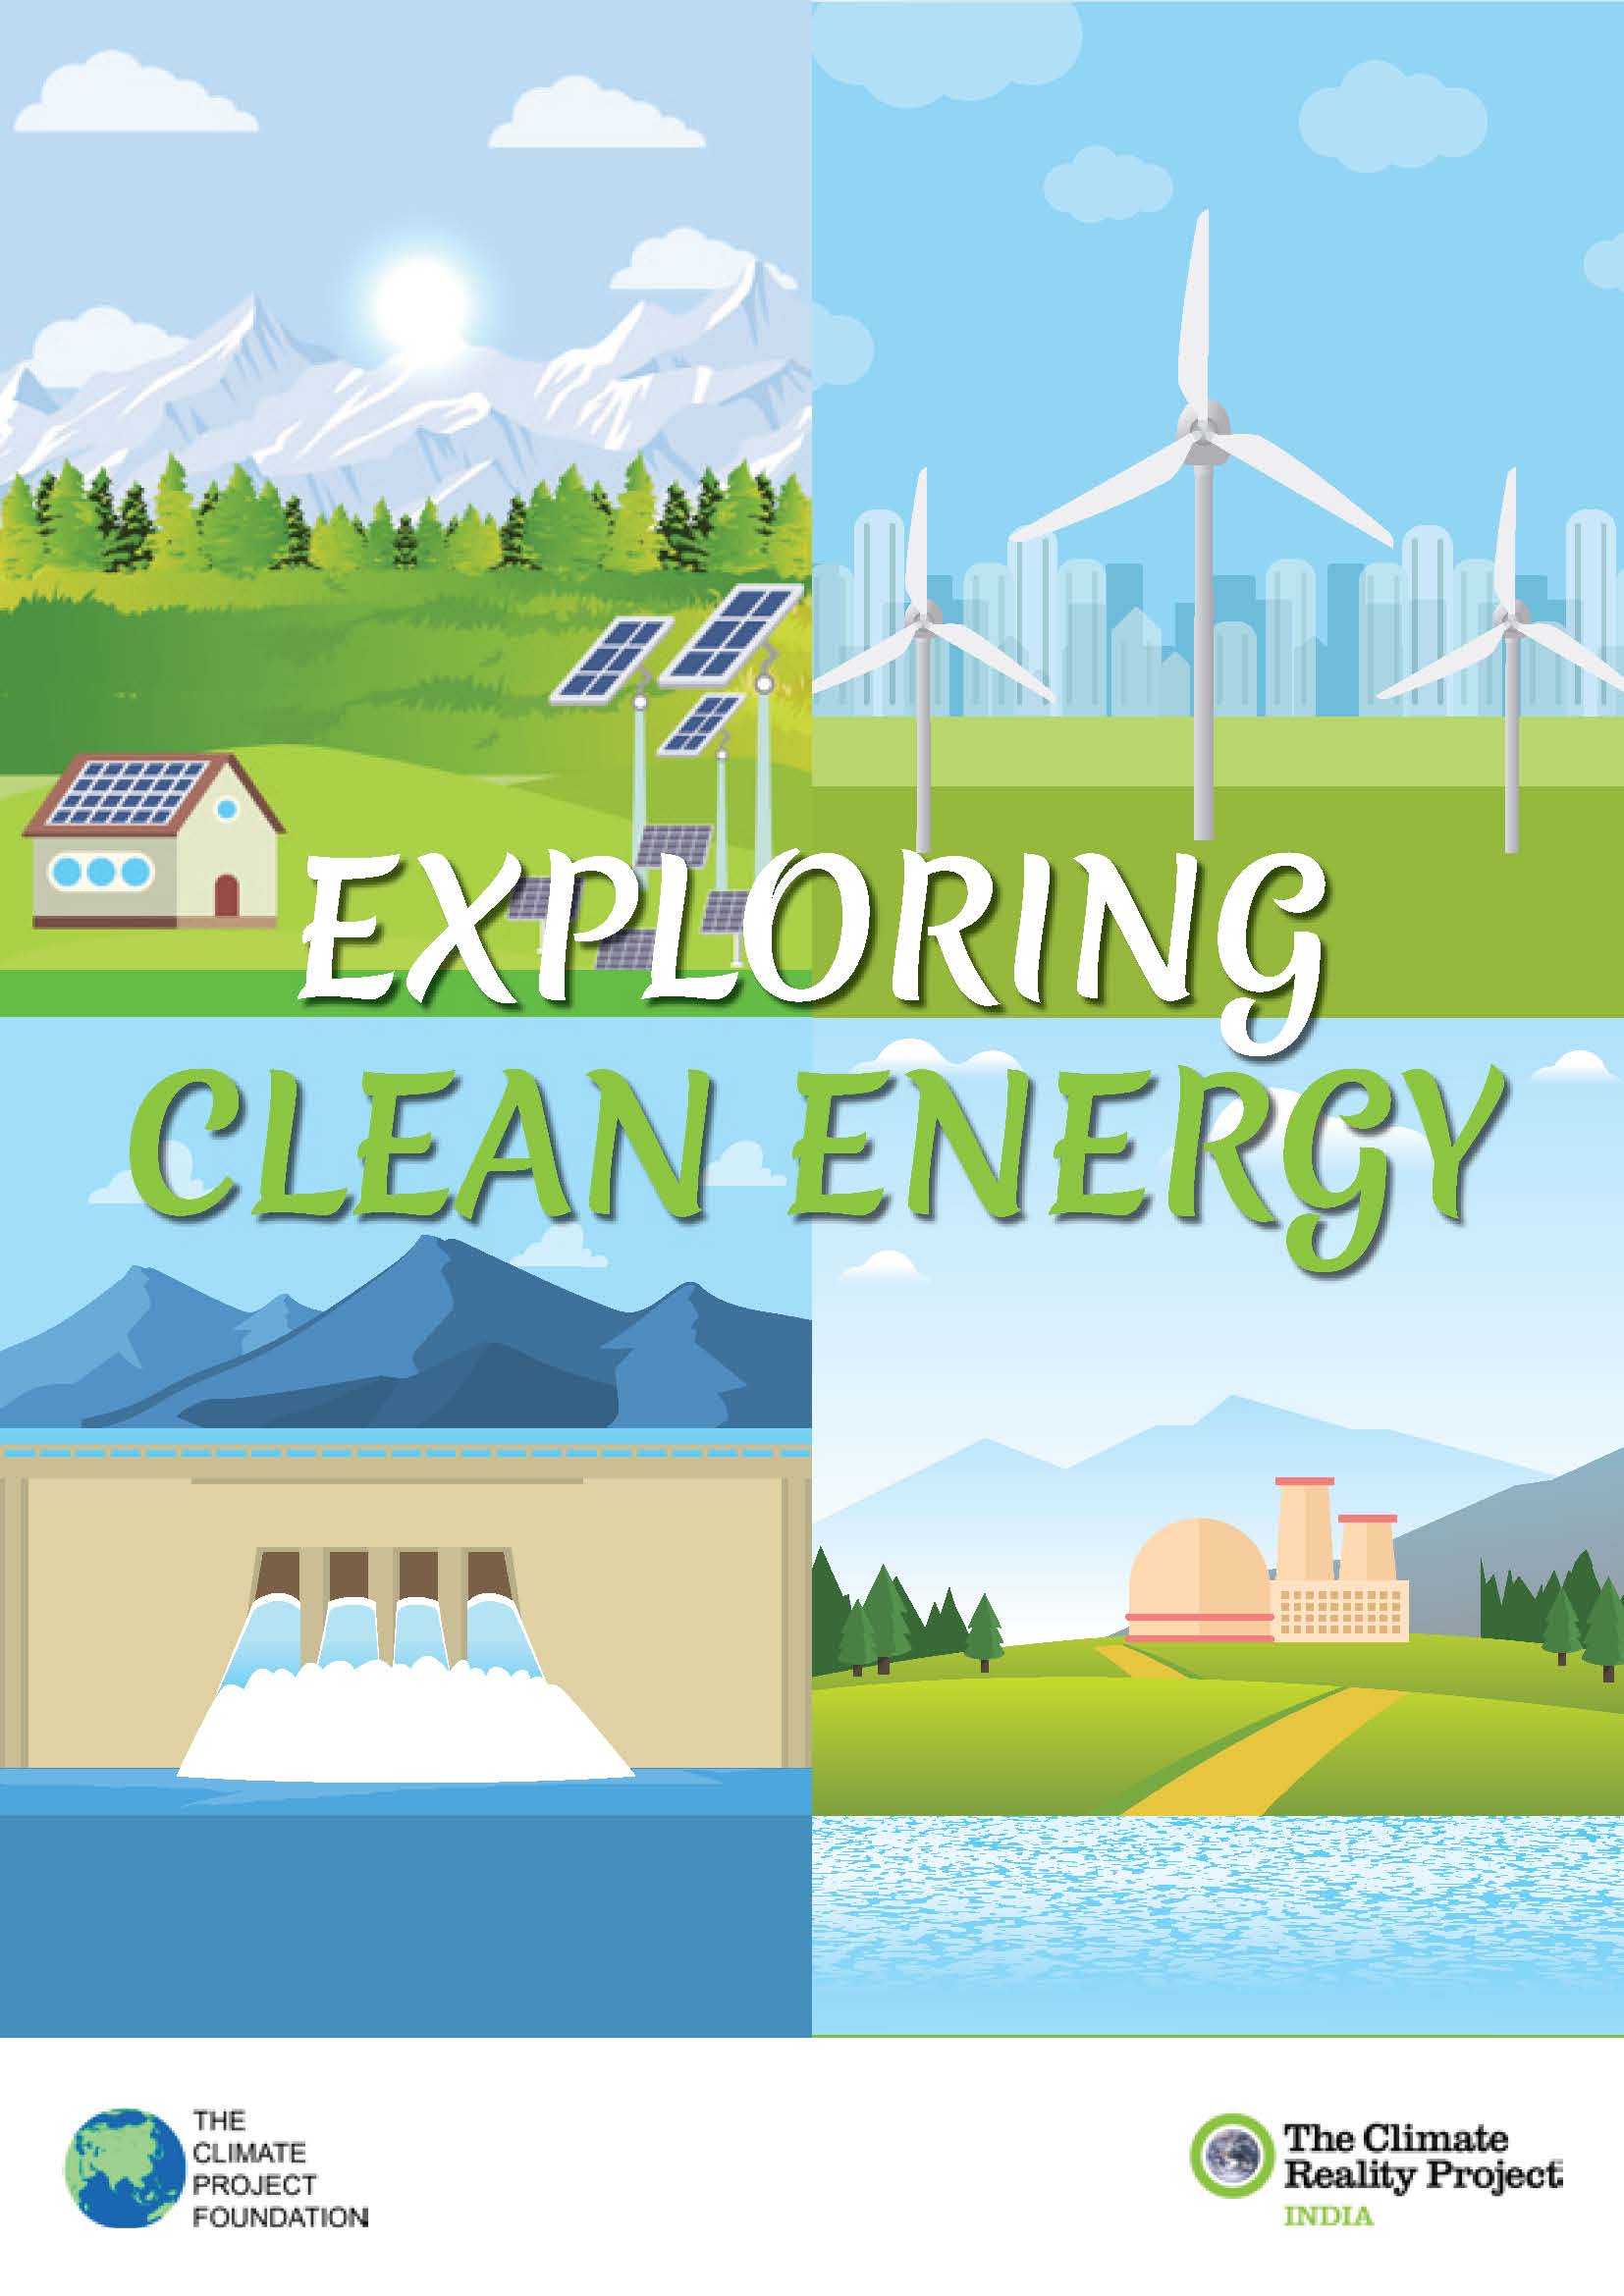 Exploring clean energy